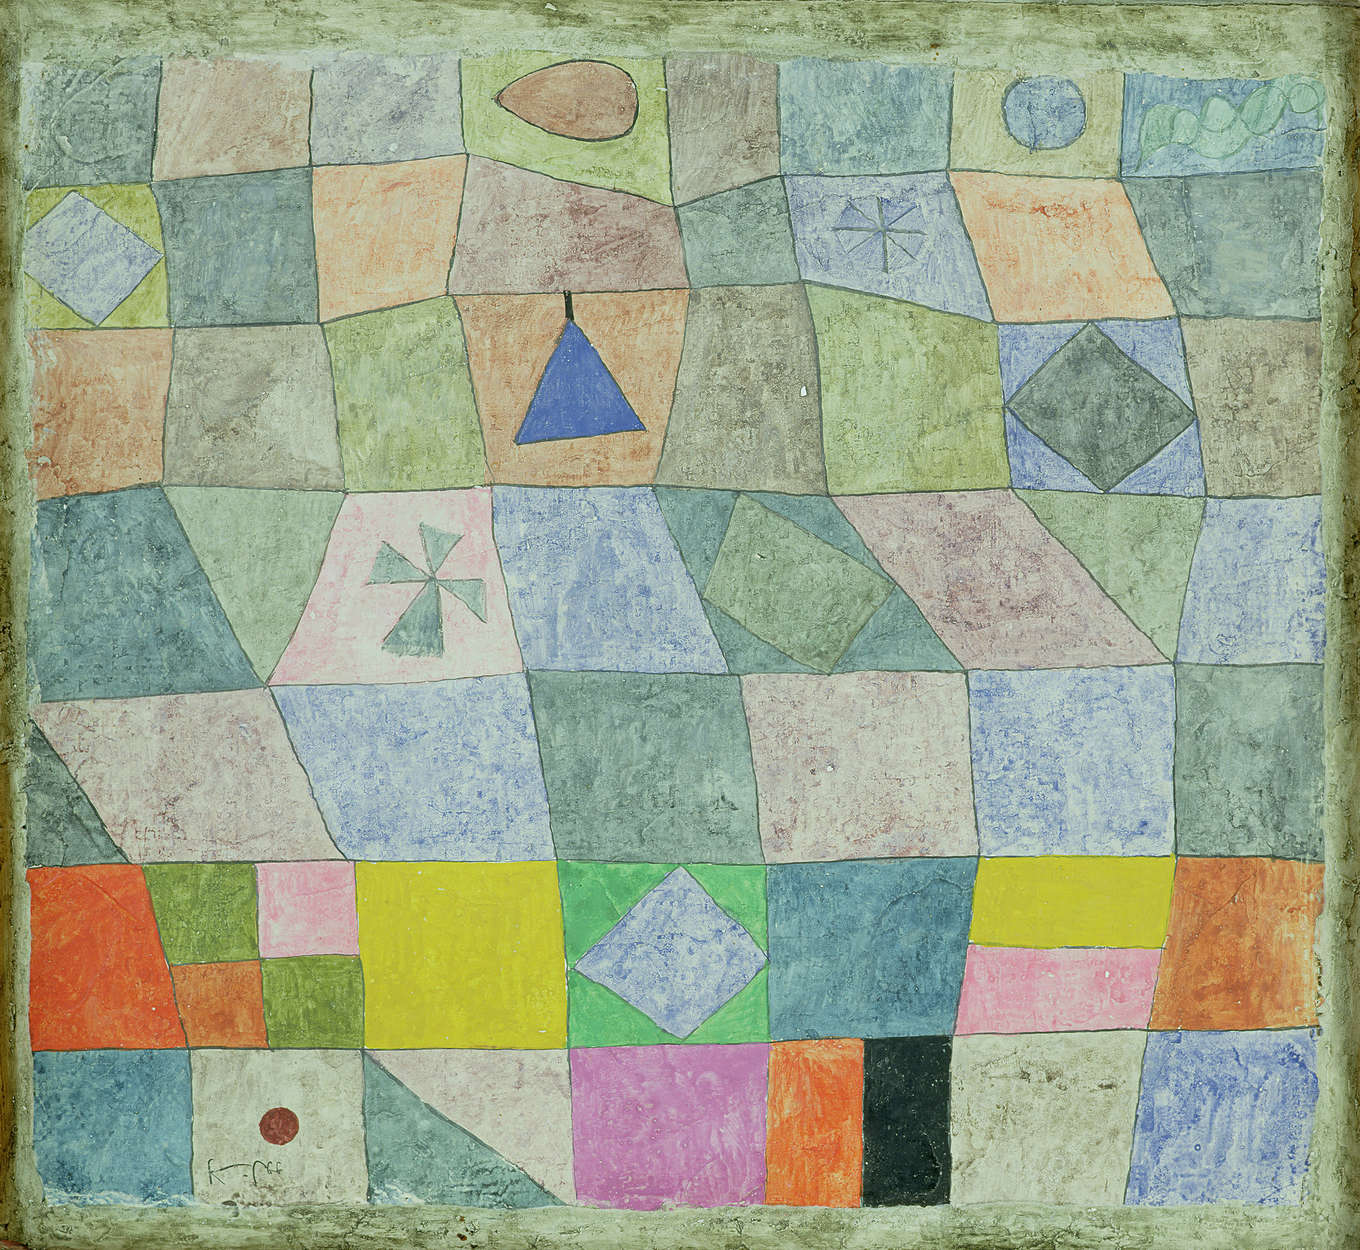             Mural "Friendly Play" de Paul Klee
        